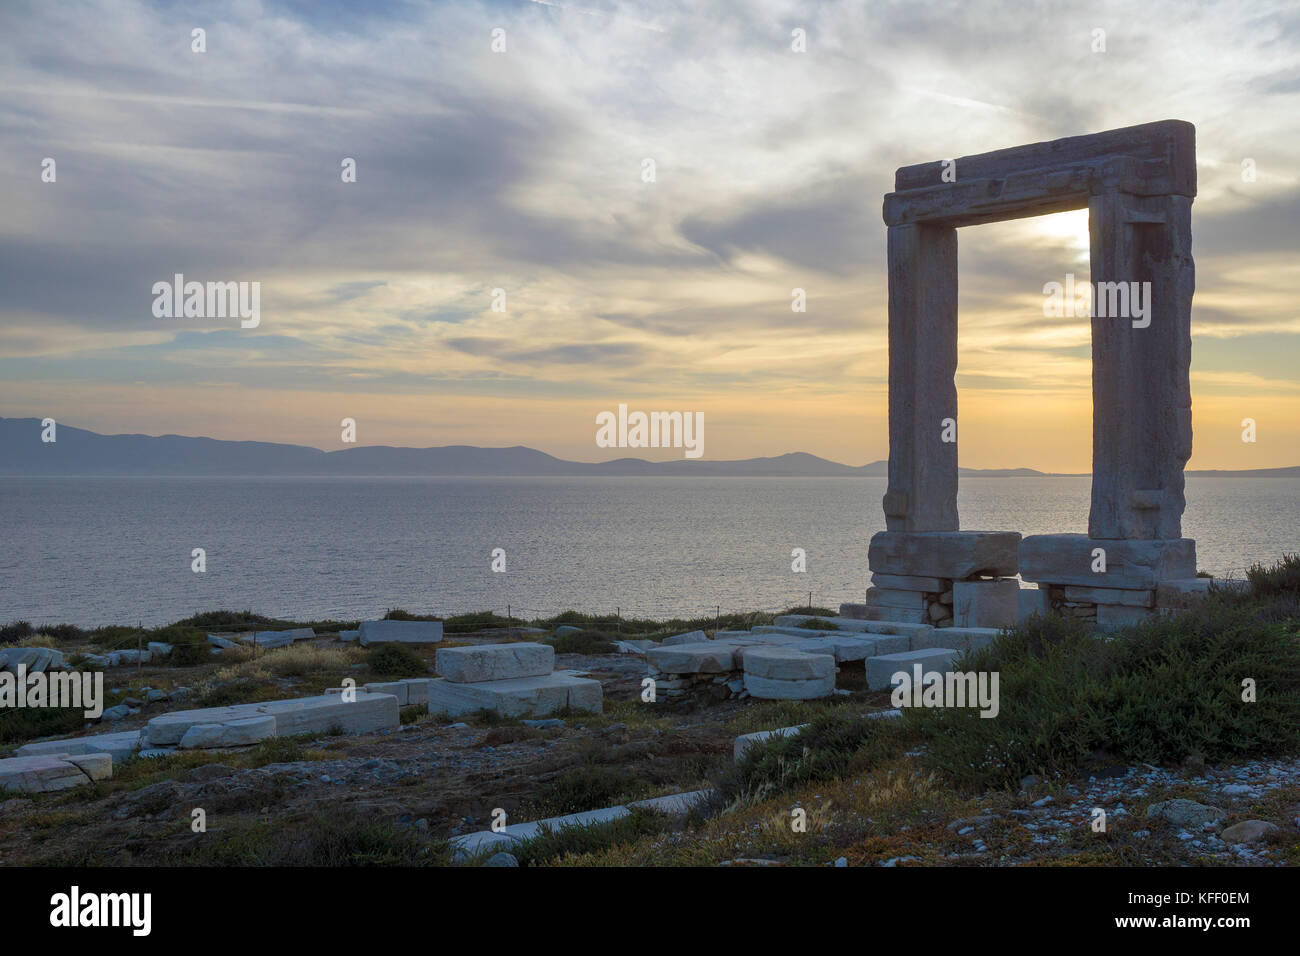 Portara de Naxos, monument de l'île de Naxos, Cyclades, Mer Égée, Grèce Banque D'Images